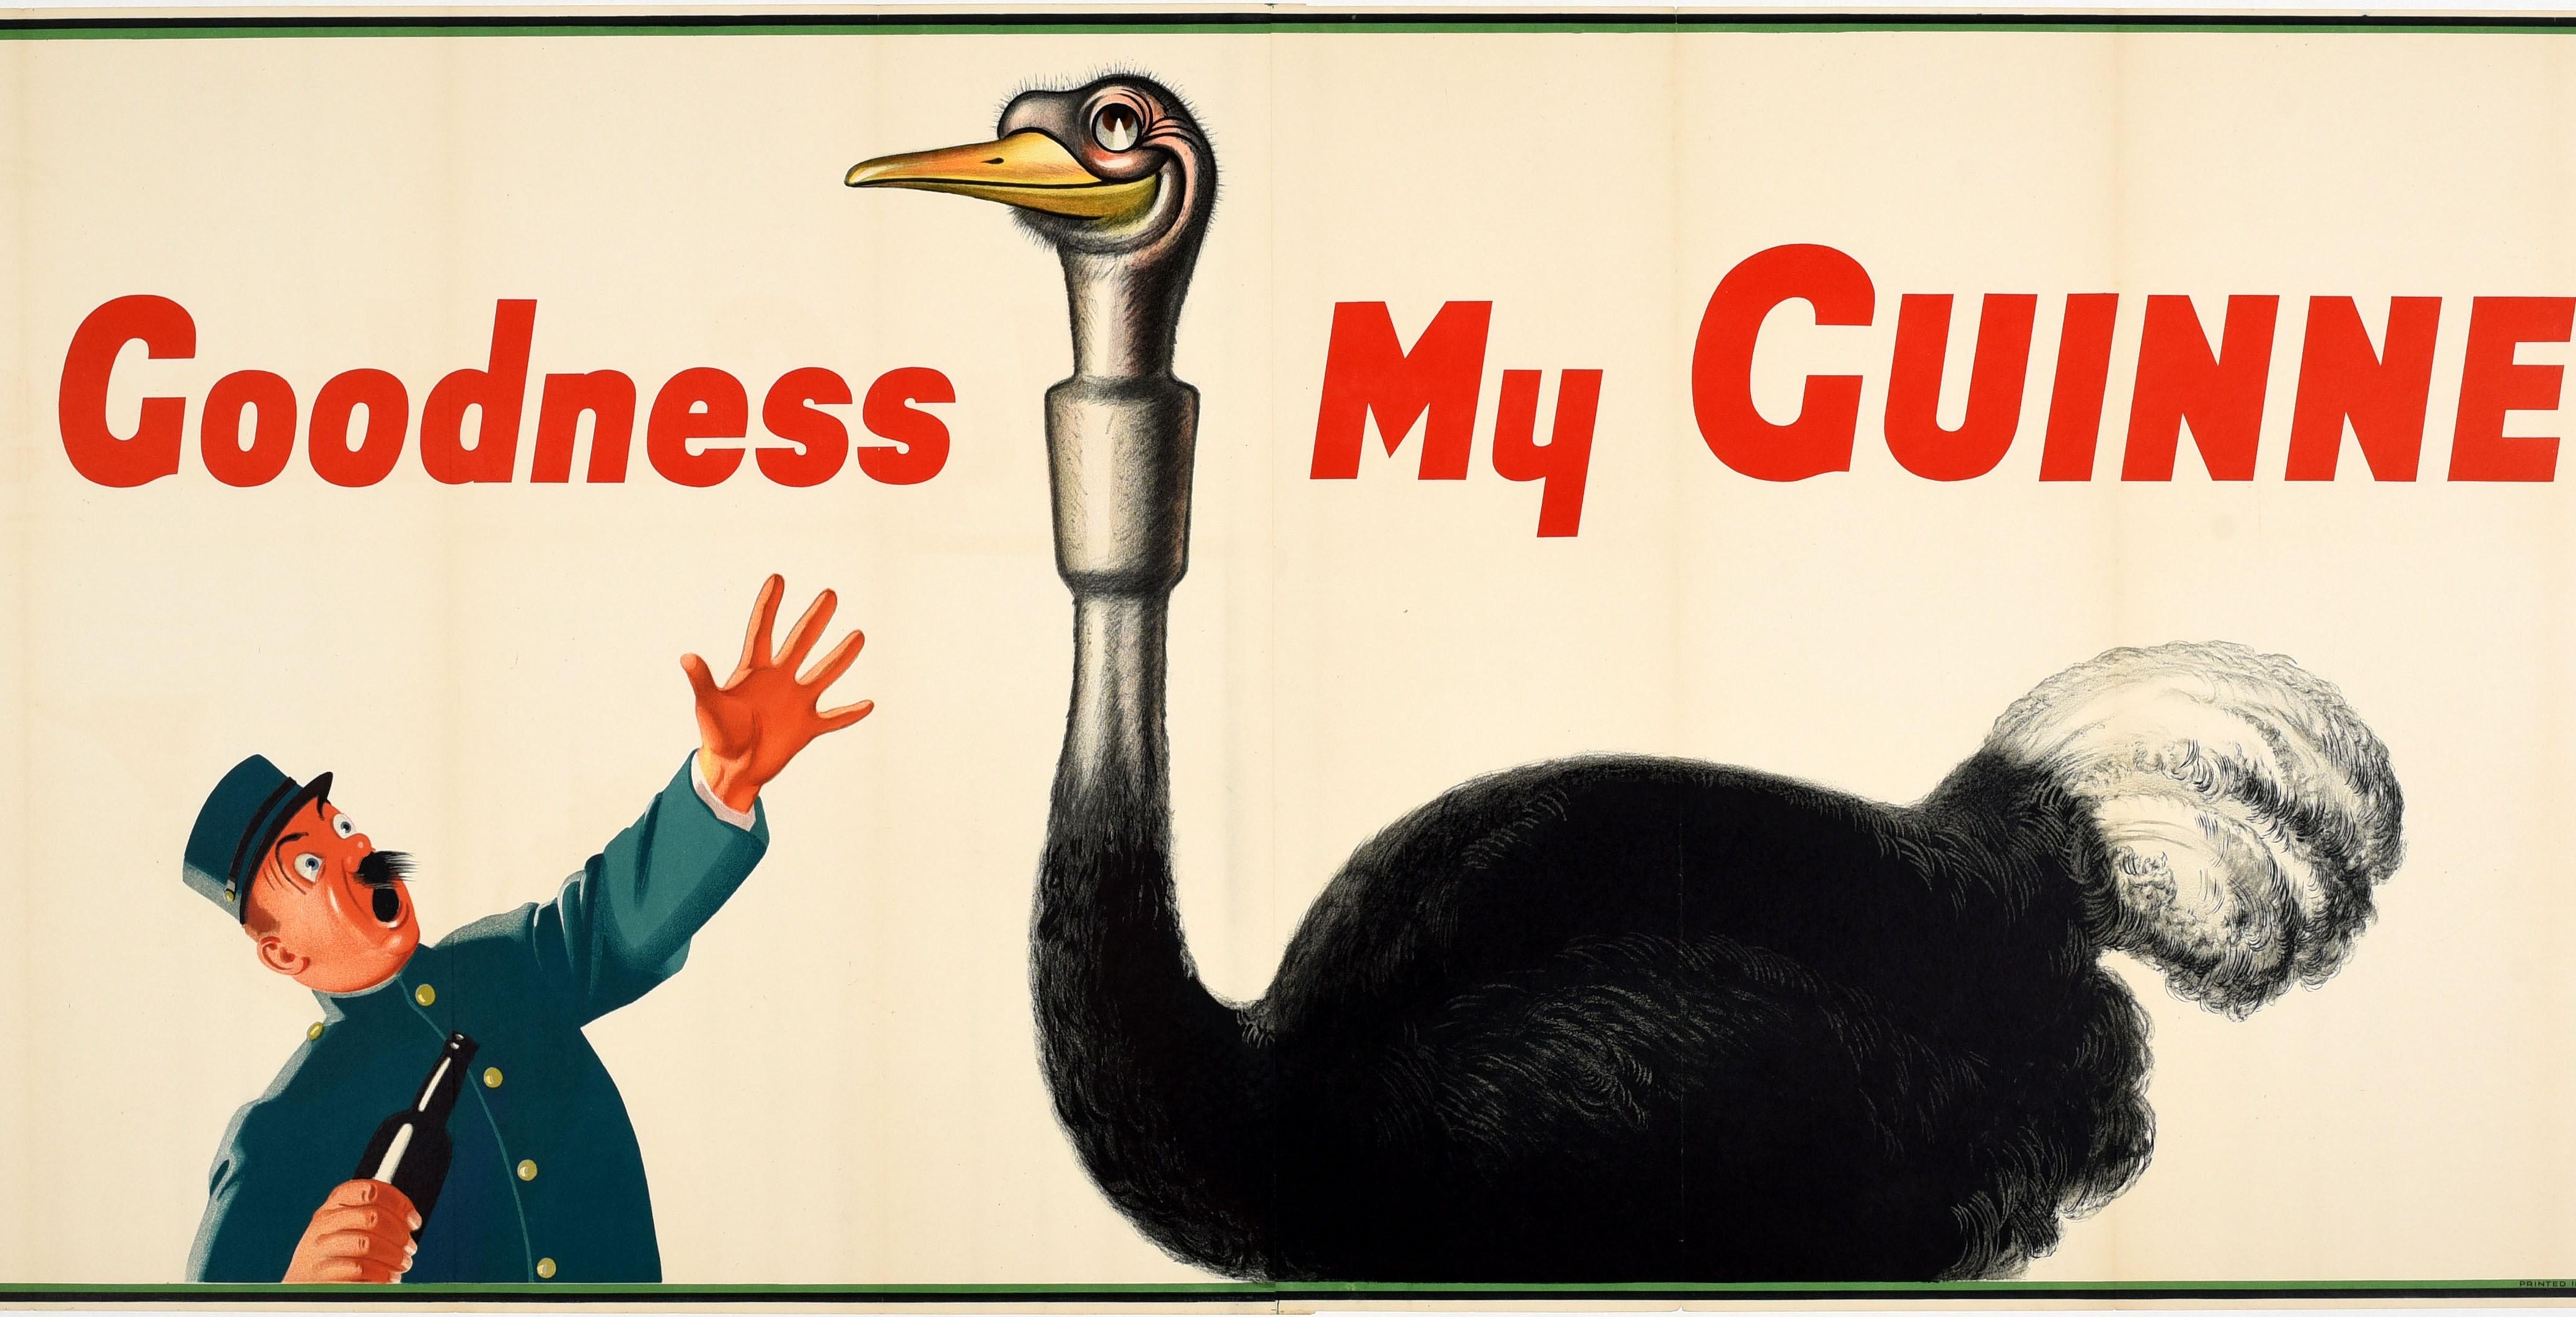 Affiche publicitaire vintage originale de Guinness - My Goodness My Guinness - présentant un dessin emblématique de l'artiste John Gilroy (John Thomas Young Gilroy (1898-1985)) représentant une autruche souriante qui a avalé un verre de Guinness,